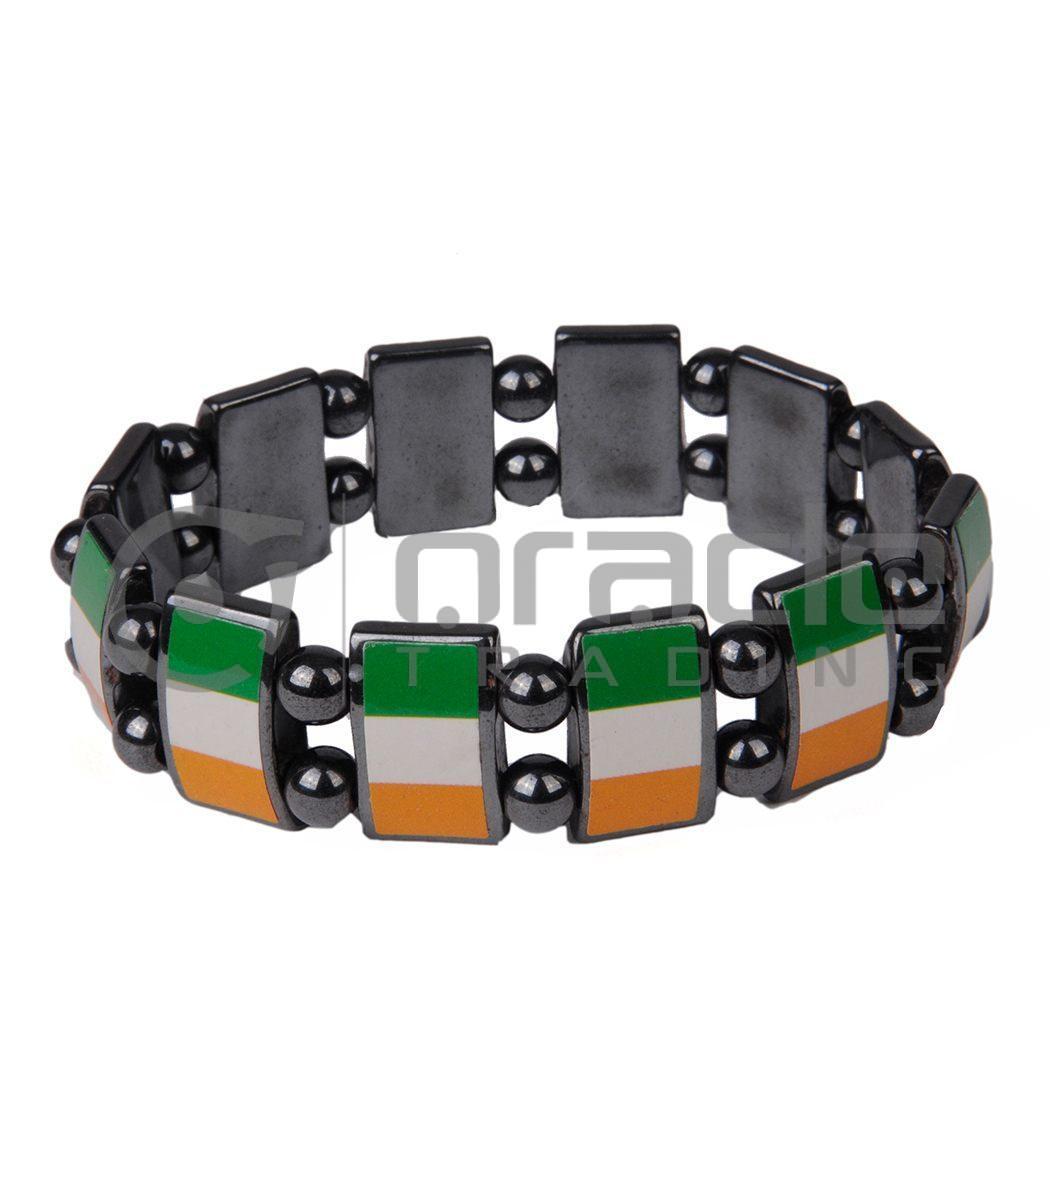 Ireland Stone Bracelets 12-Pack